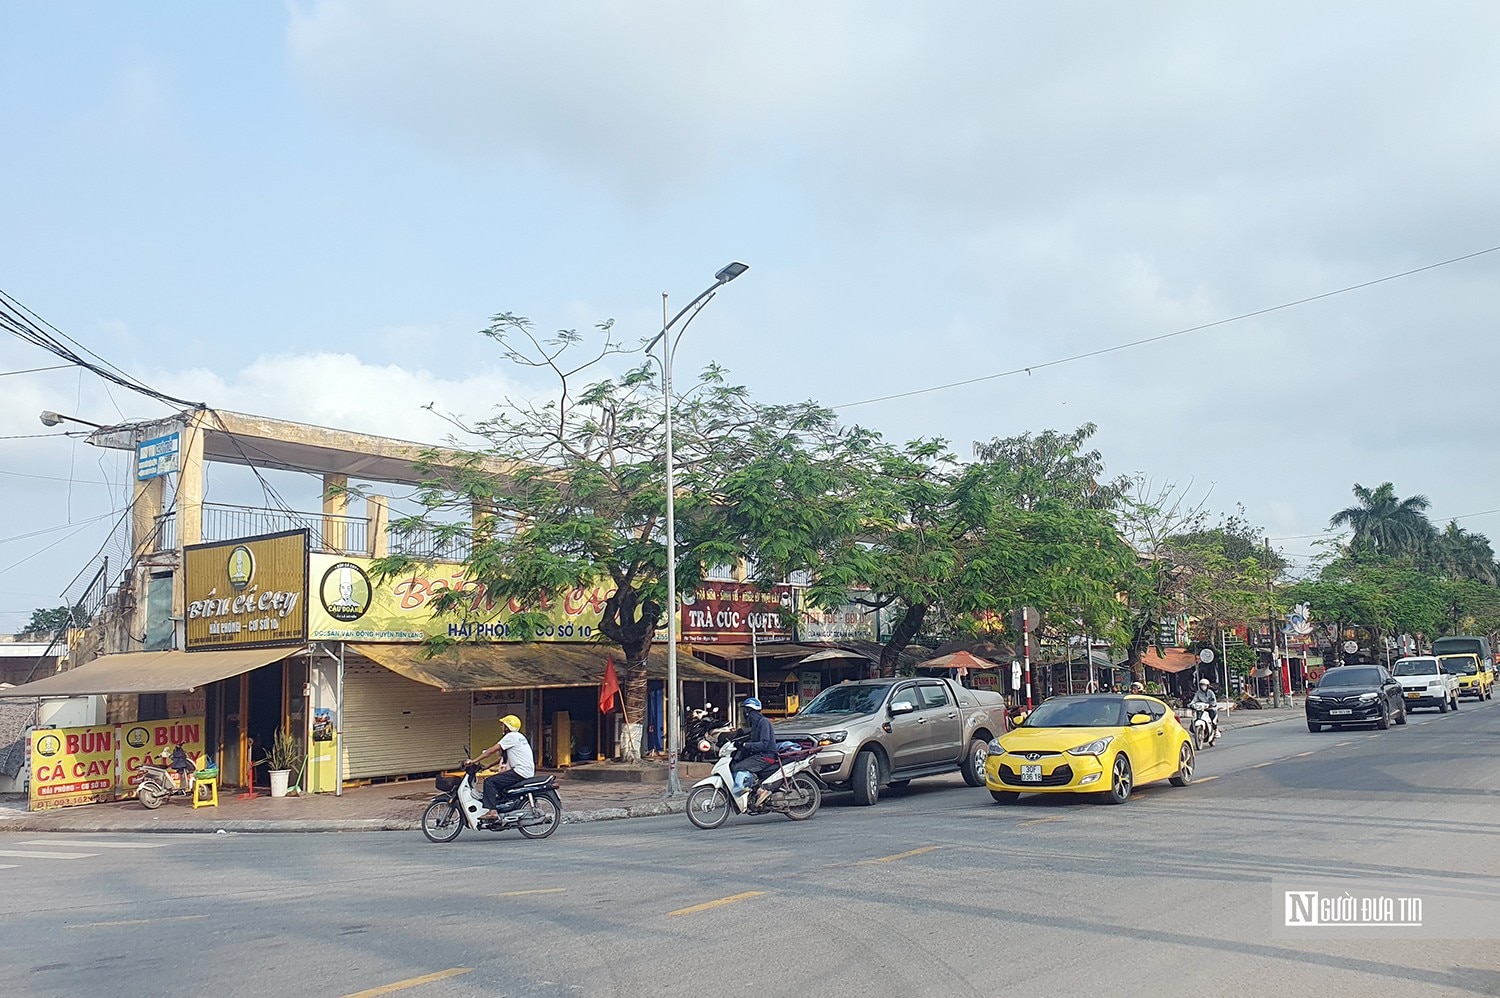 Immobilier - Hai Phong : Nécessité de gérer strictement la location des kiosques de vente dans les stades